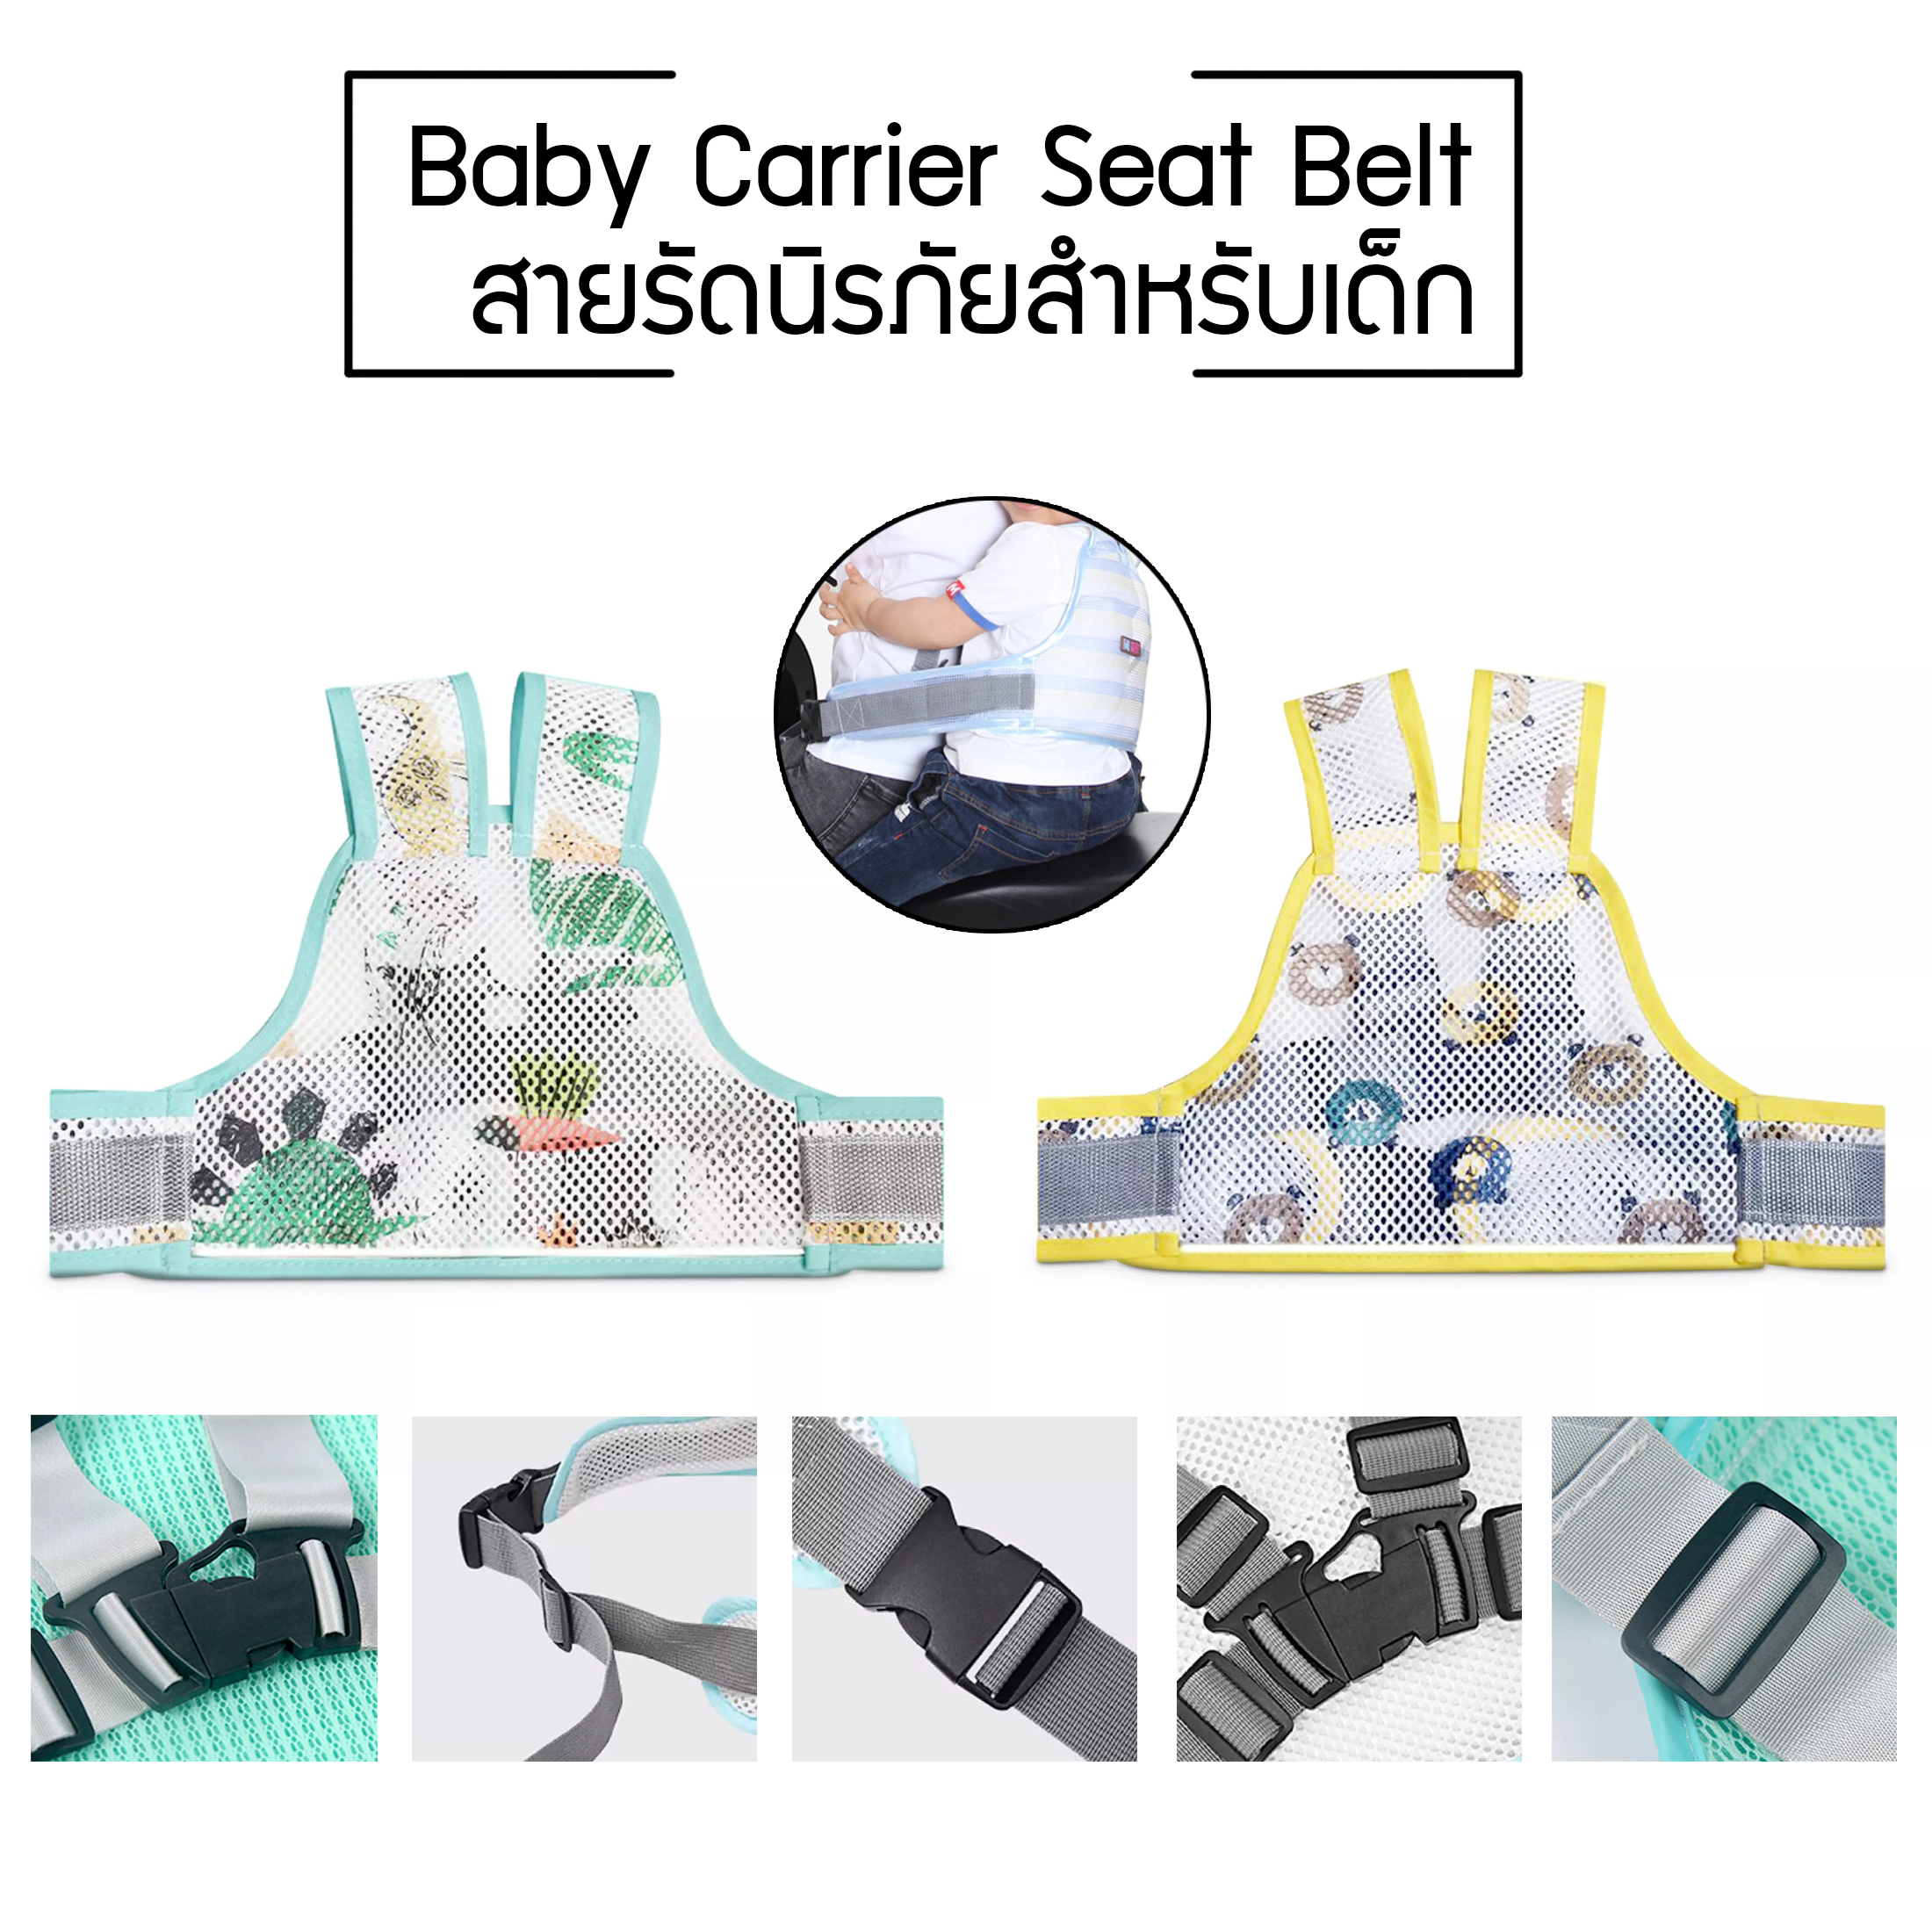 สายรัดนิรภัยเด็ก สำหรับเด็ก เข็มขัดนิรภัยเด็ก สายรัดเอวกันเด็กตก ป้องกันเด็กตกรถ เพื่อความปลอดภัย Baby Carrier Seat Belt  ร้าน 24 Beauty